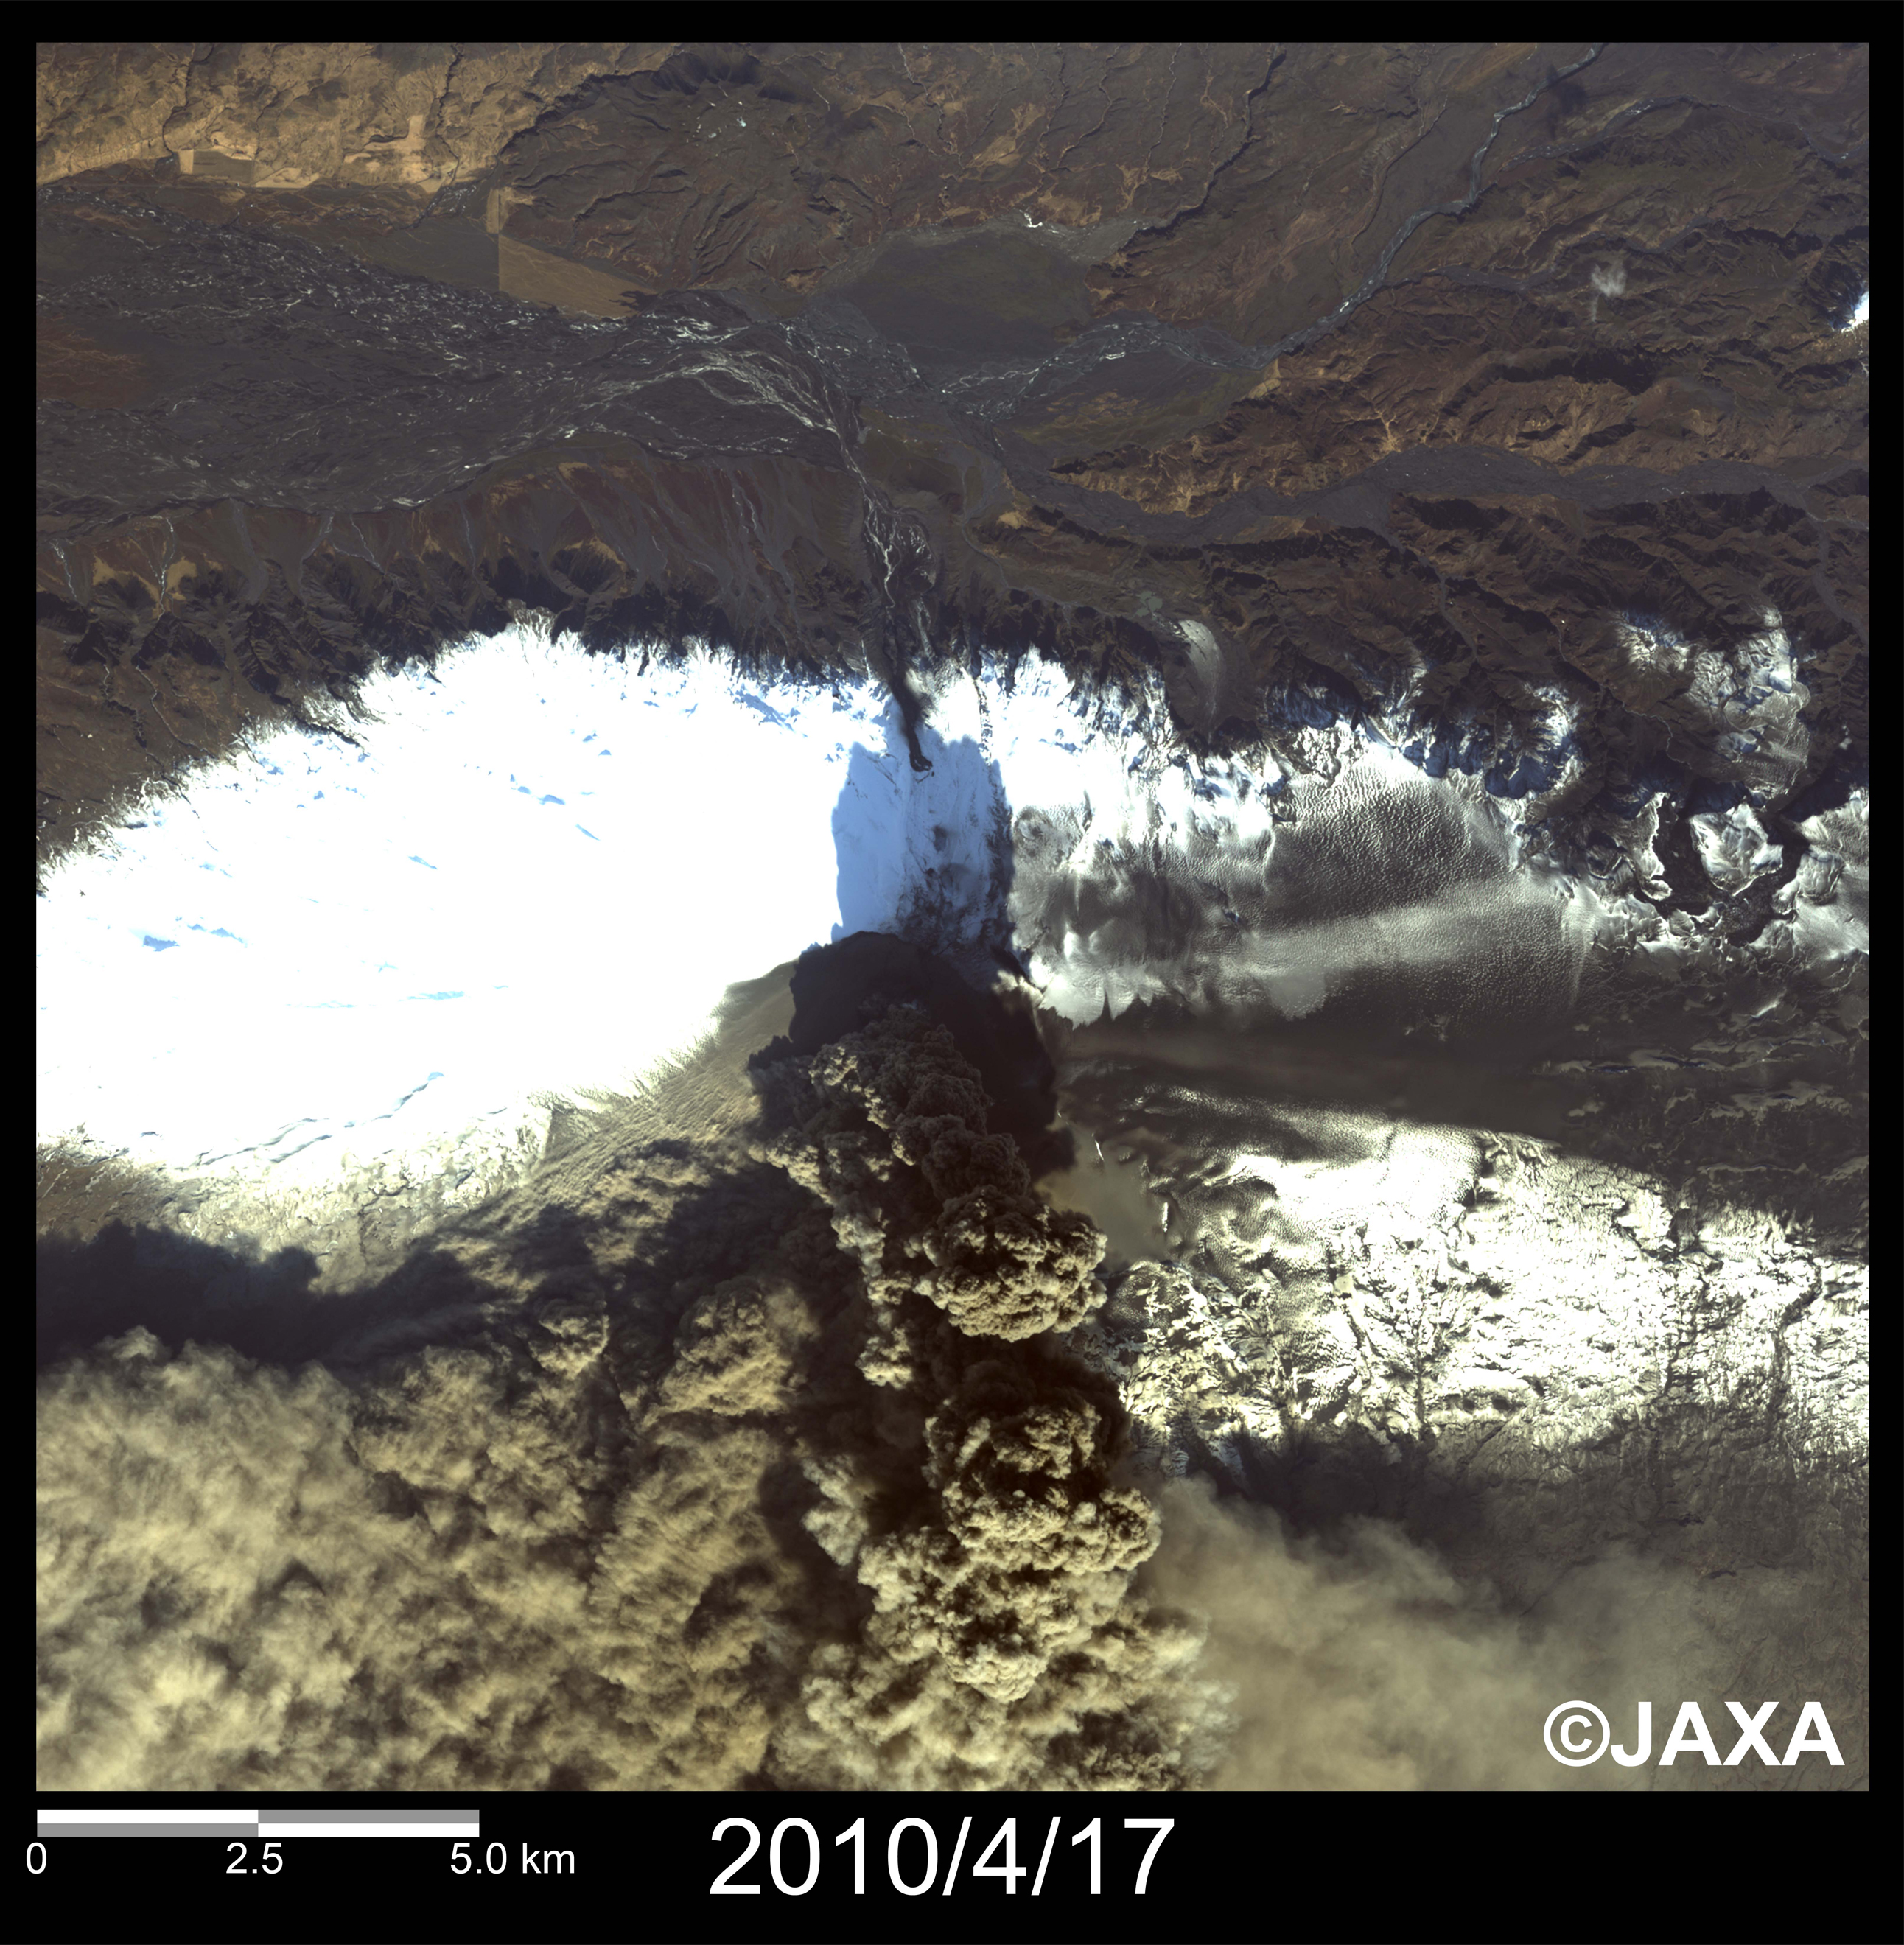 図2: エイヤフィヤトラヨークトル氷河の火山火口付近の拡大画像(それぞれ約20km四方) 2010年4月17日観測